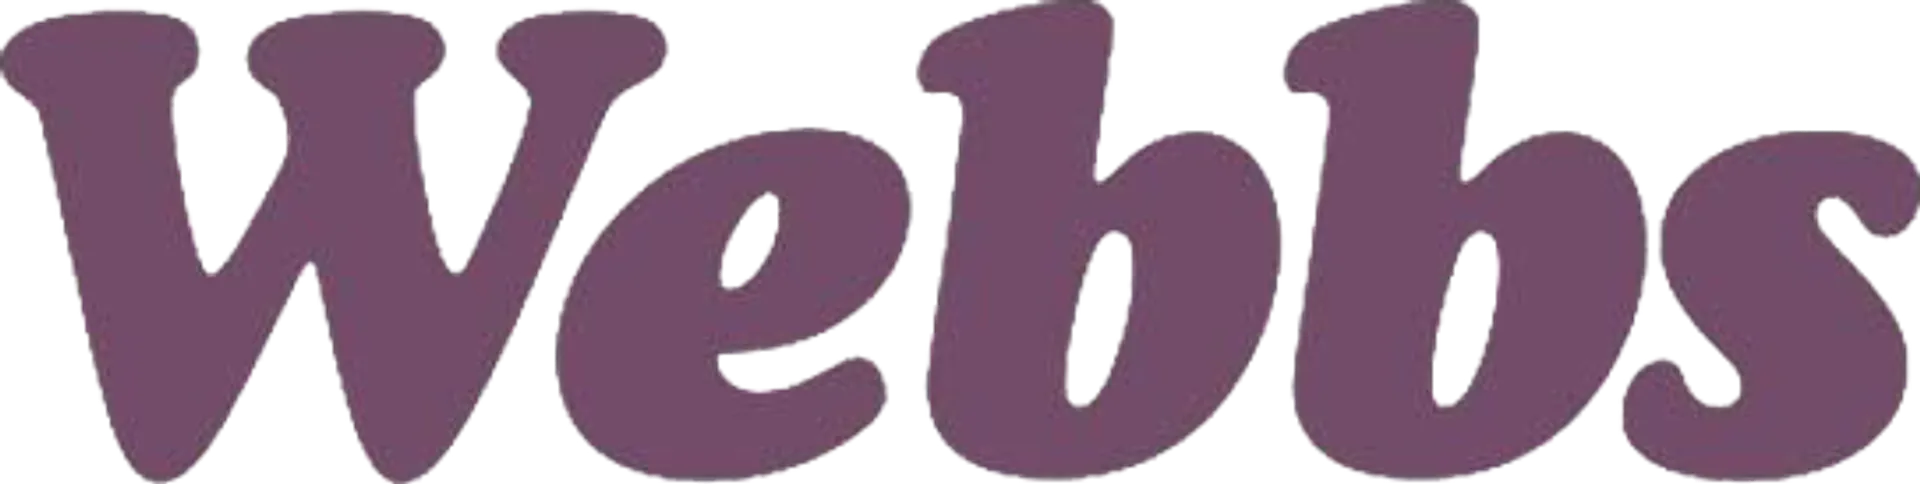 WEBBS logo